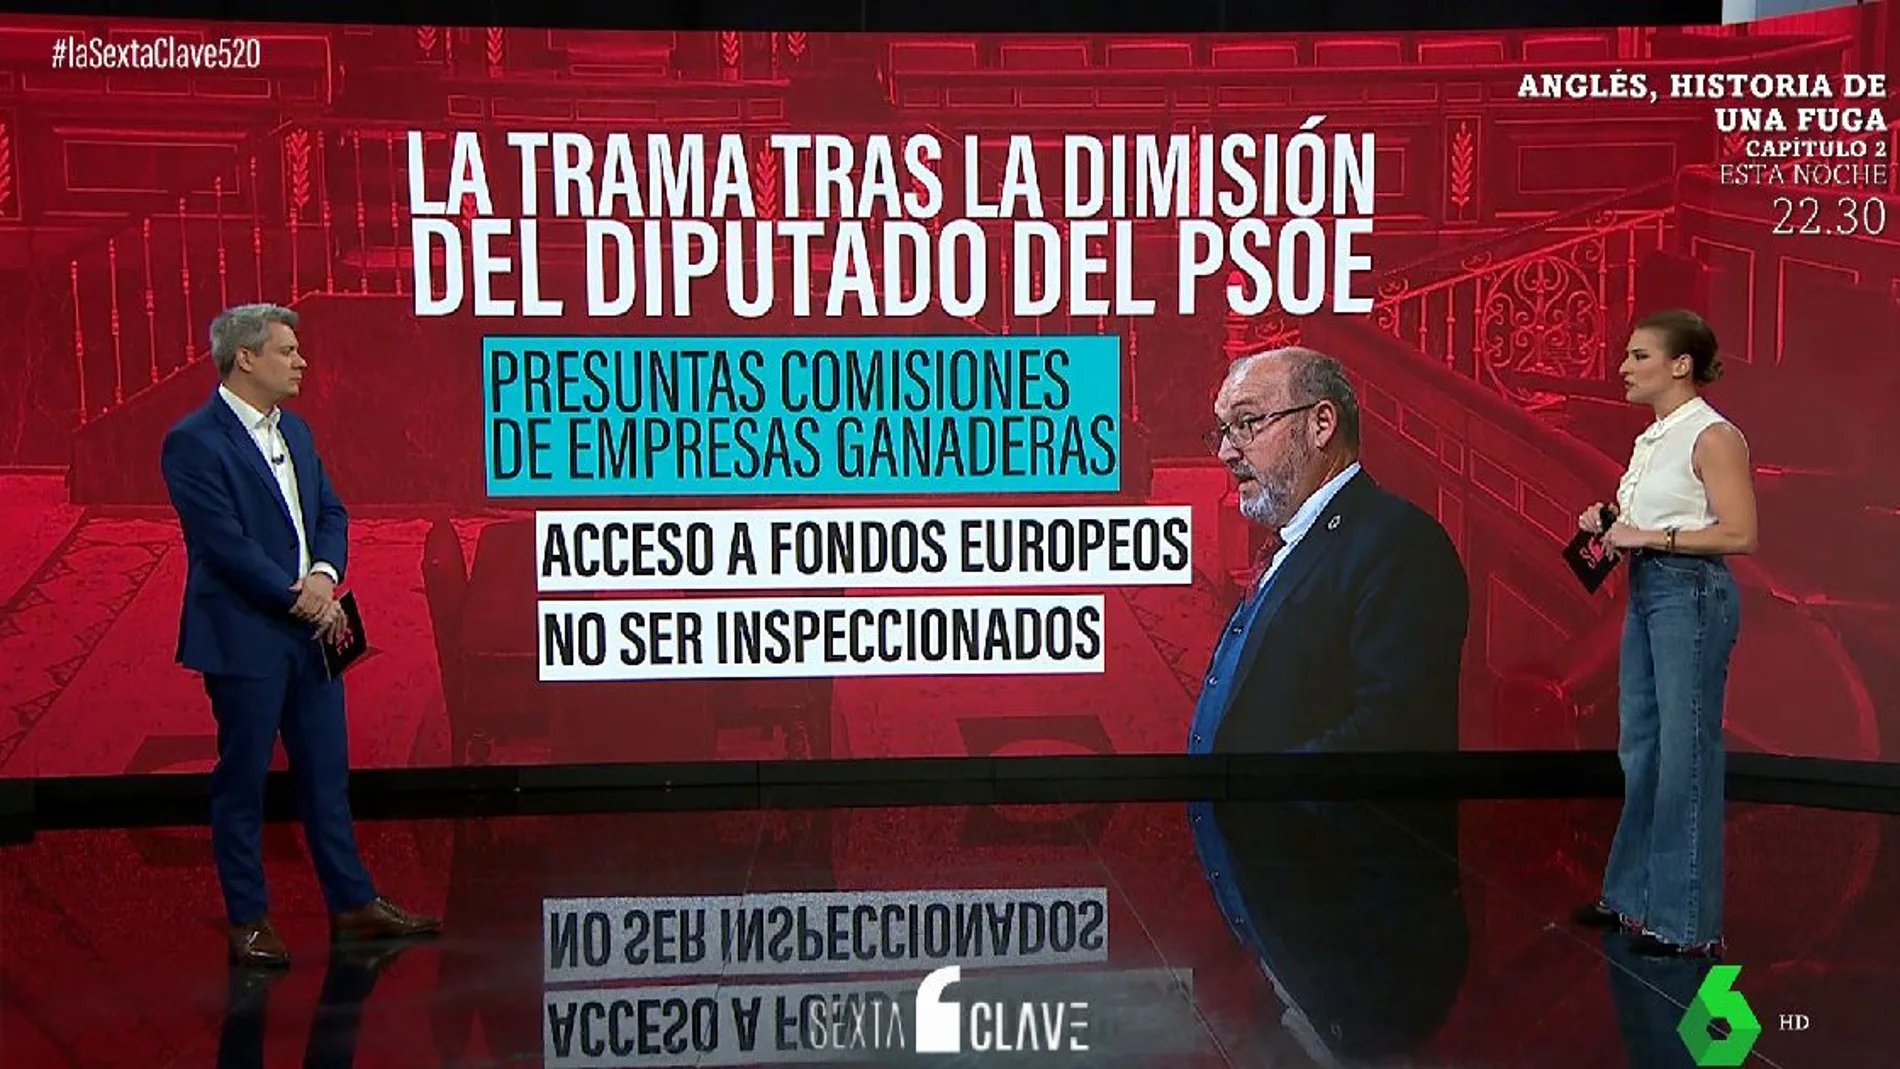 La trama tras la dimisión del diputado del PSOE